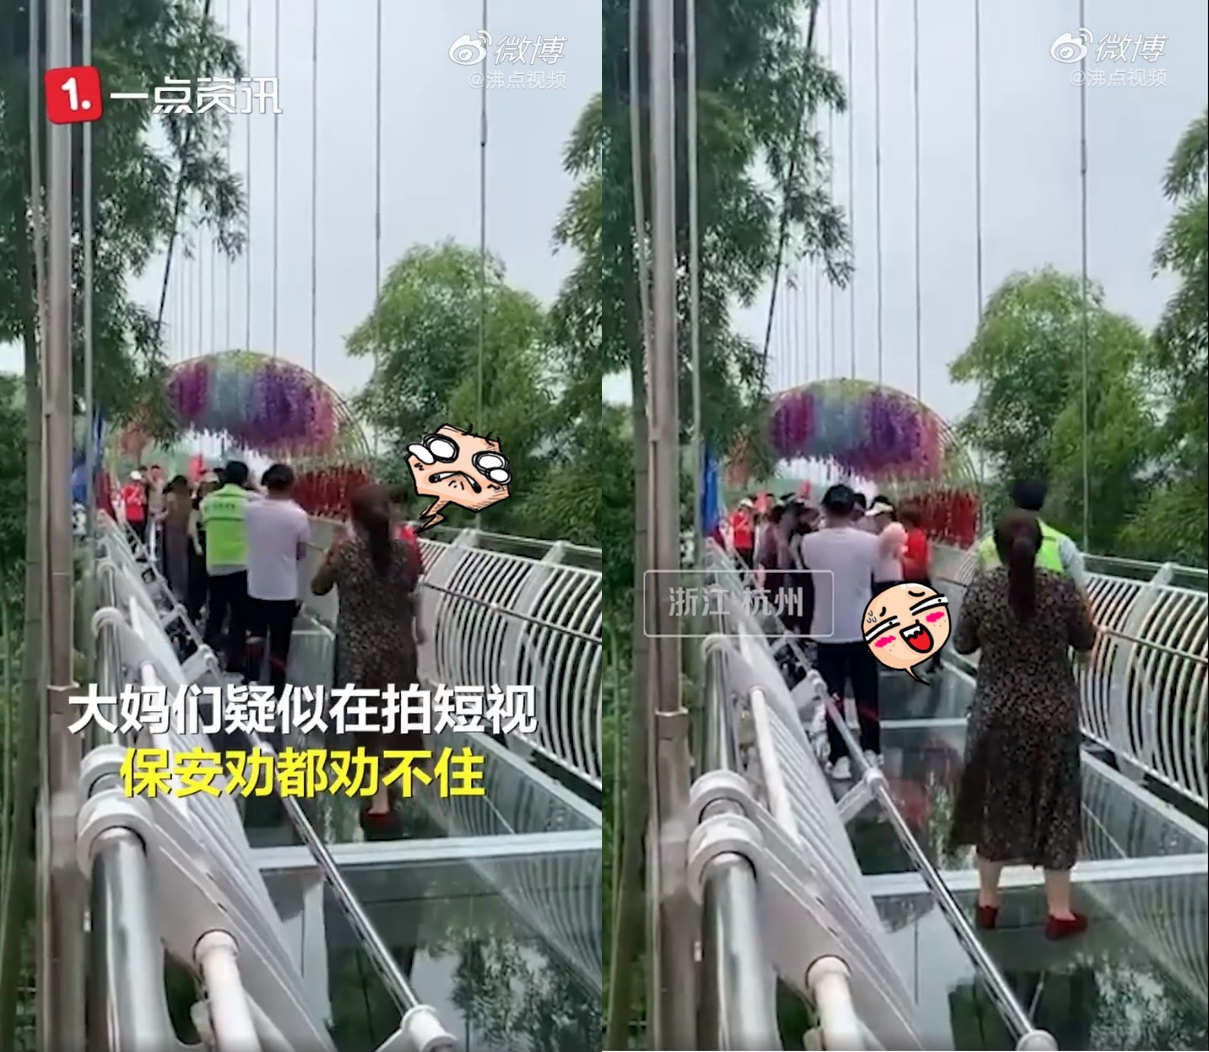 Các bà cô Trung Quốc kéo nhau lên cầu kính nhảy aerobic khiến dân tình sợ tái mào - Ảnh 2.